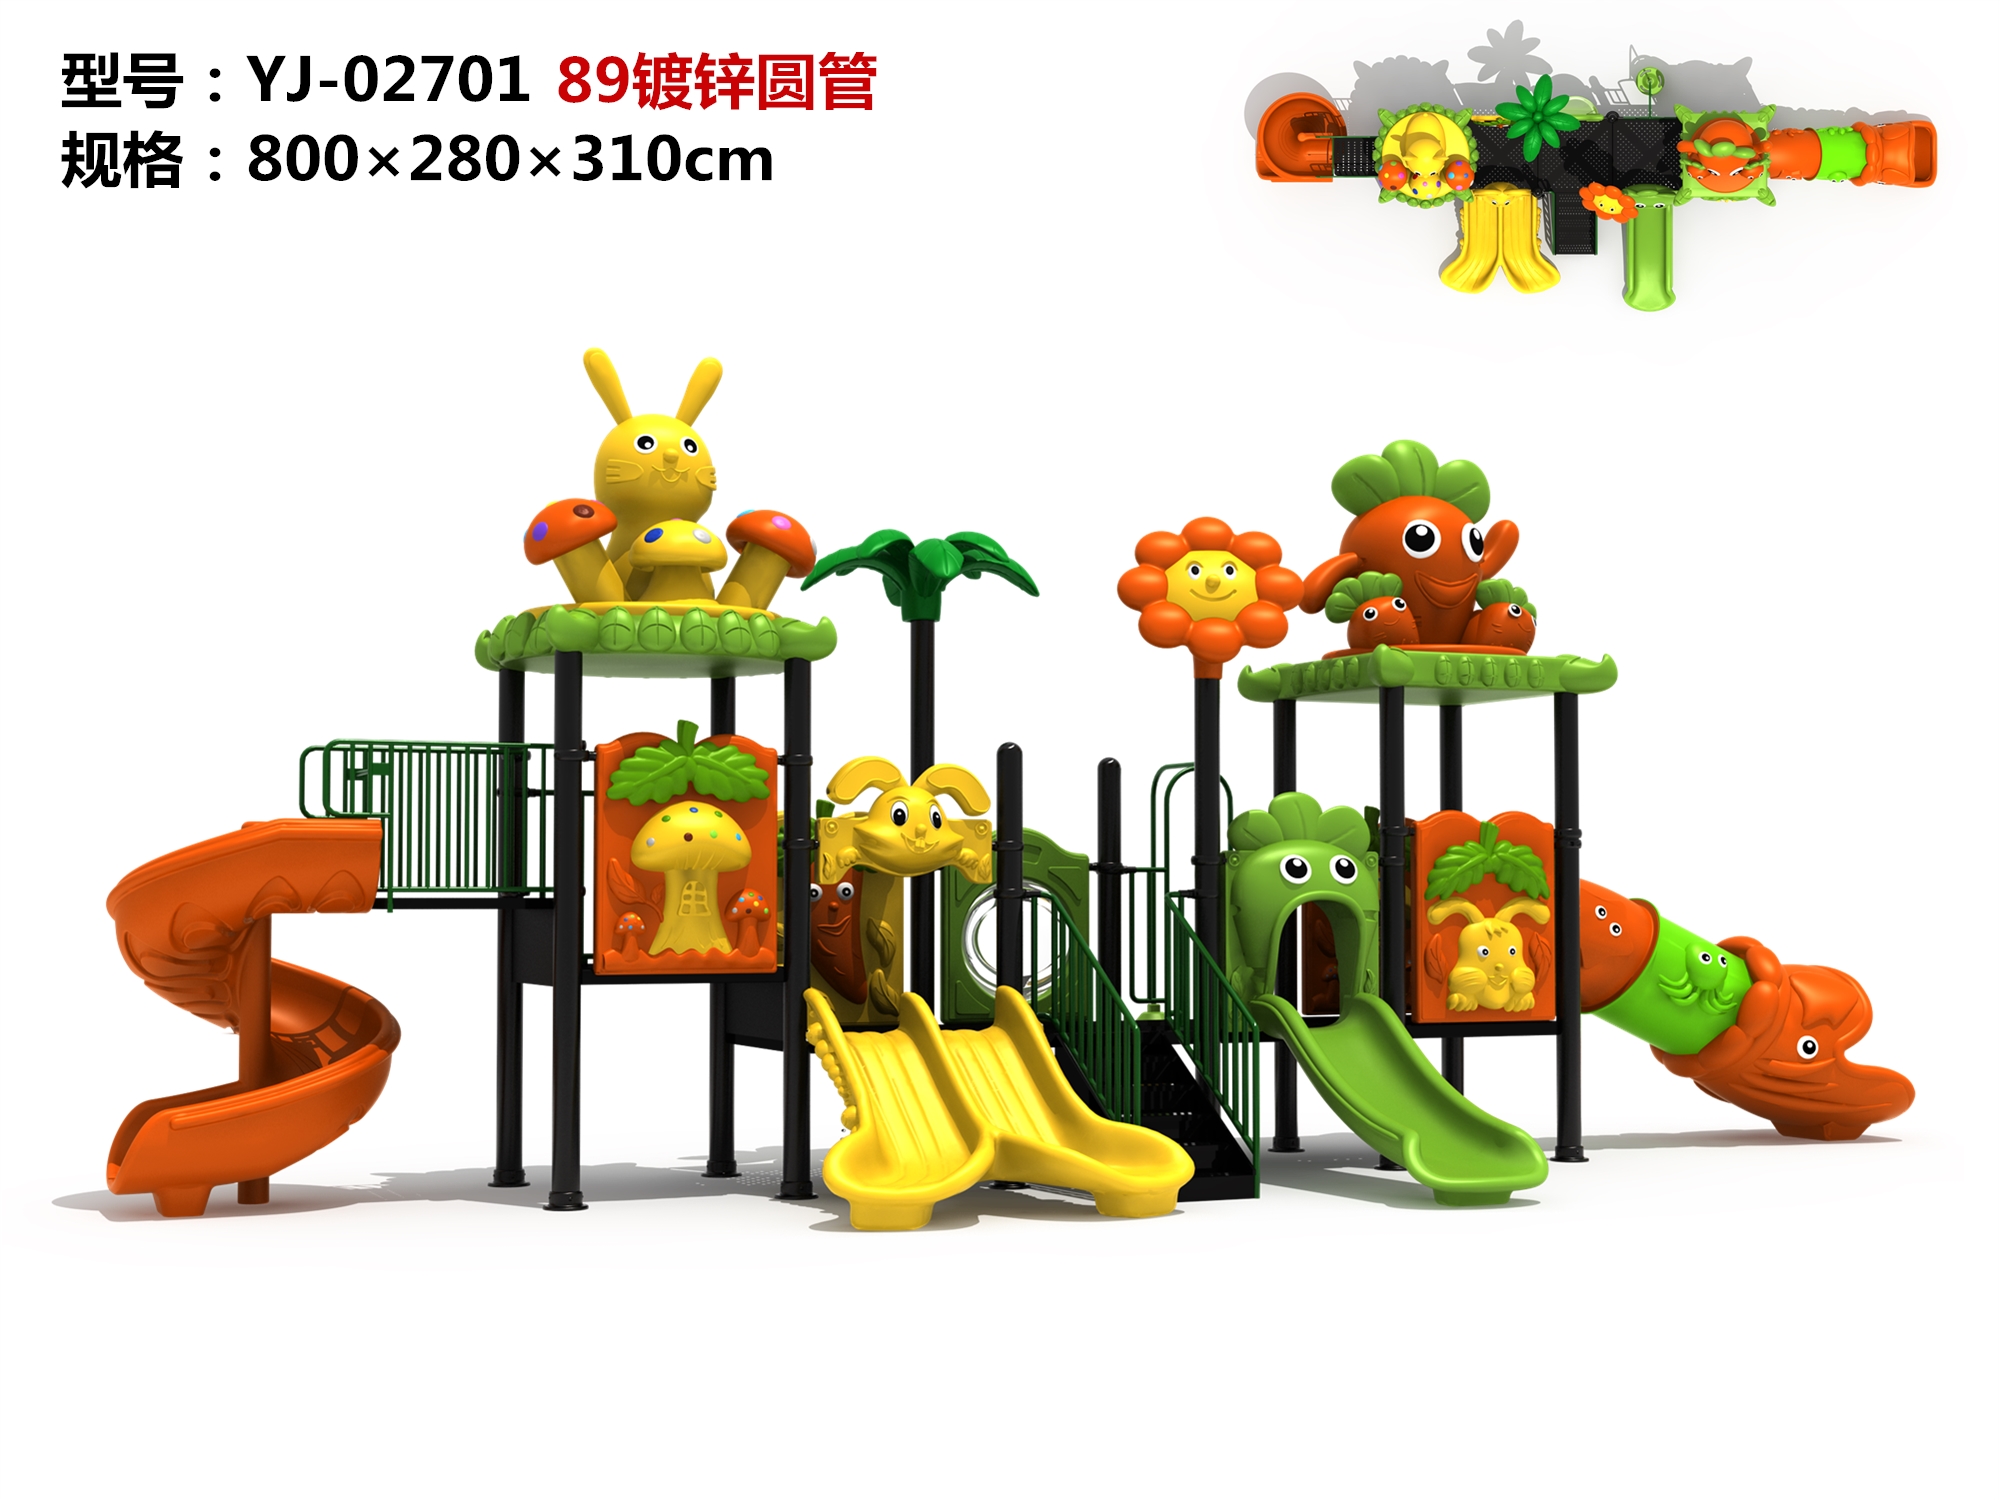 OL-MH02701OUTTROAL Diapositiva Equipo de juego para niños